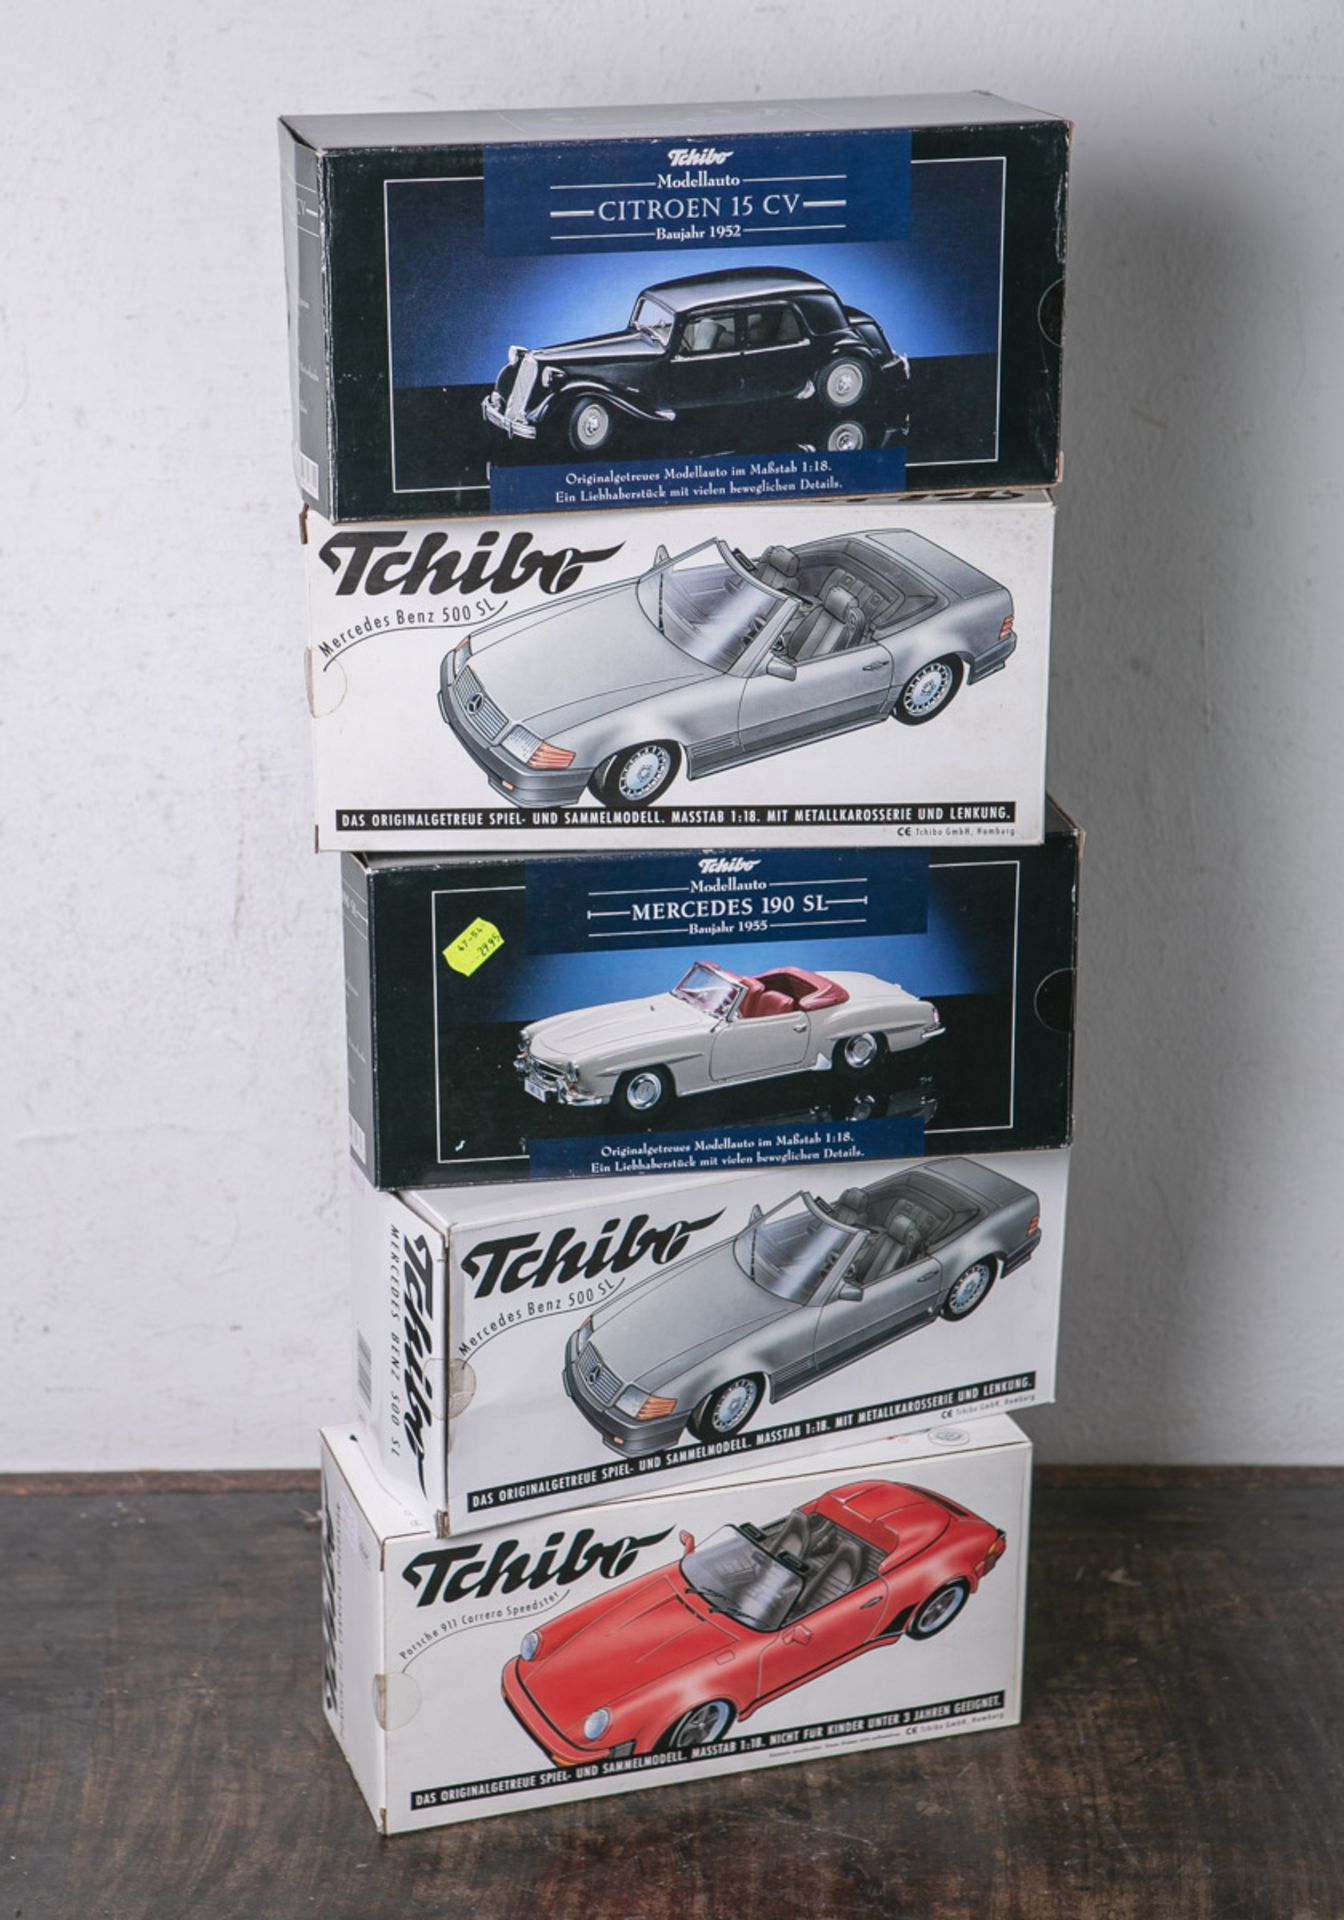 Konvolut von 5 Modellautos von "Tchibo", 1:18, bestehend aus: 2x Mercedes Benz 500 SL, 1x